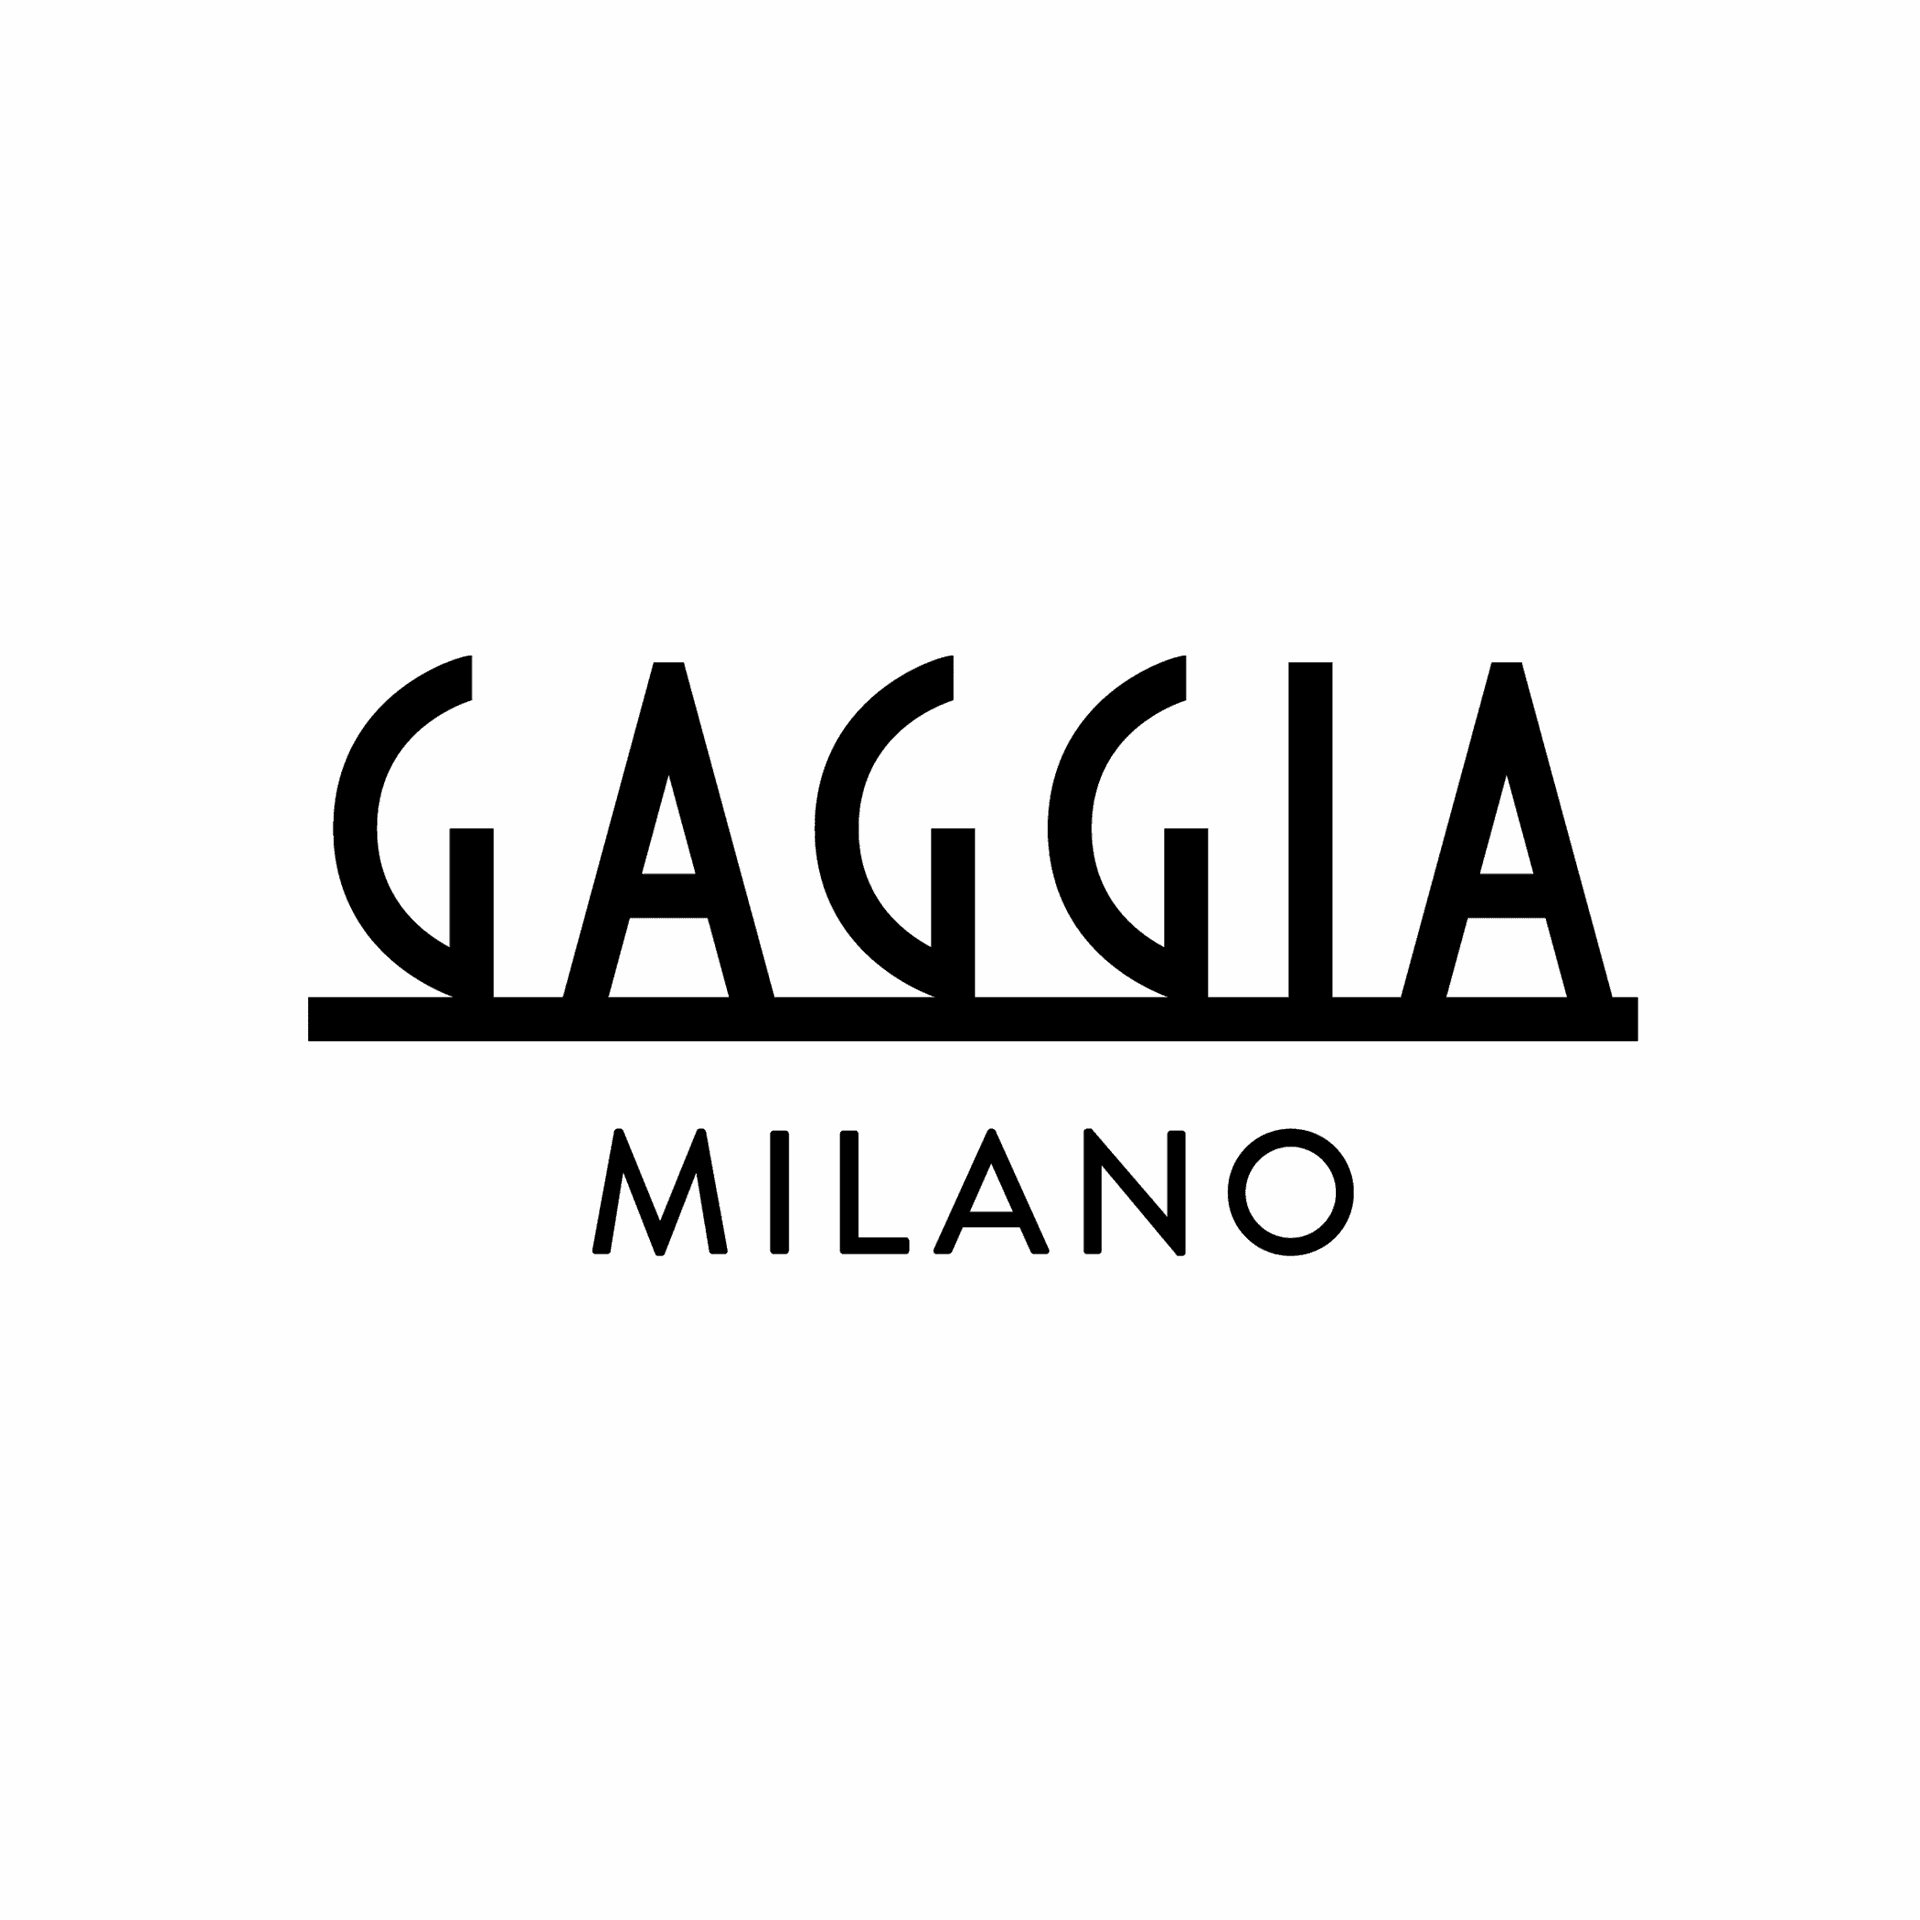 Brand: Gaggia